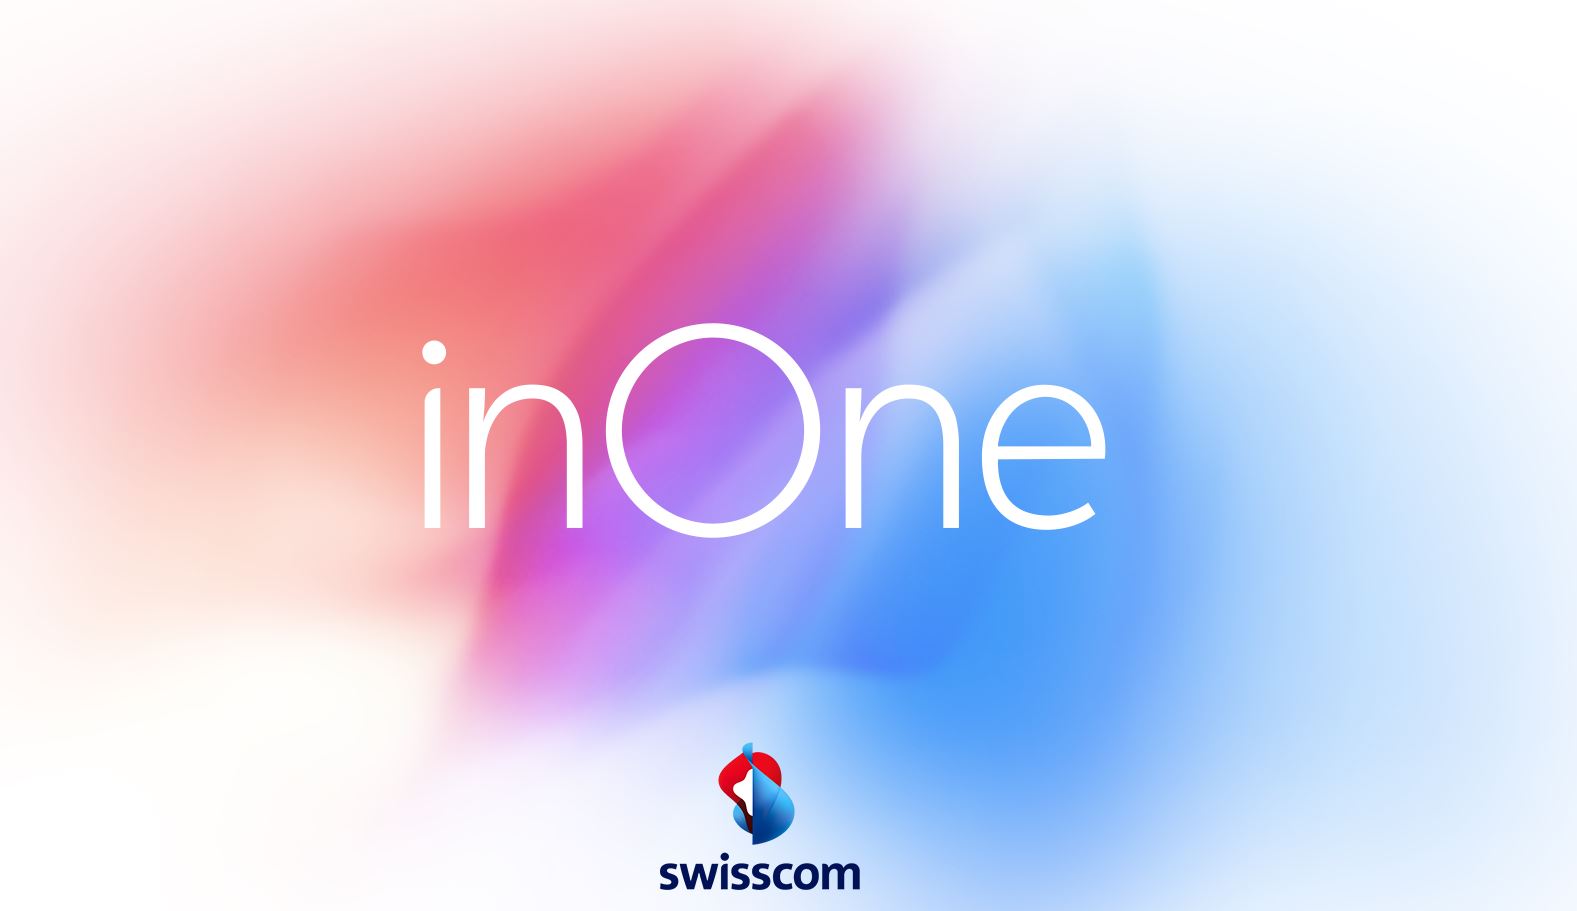 Swisscom erlaubt mit neuem Abo die gleichzeitige Nutzung mehrerer Geräte